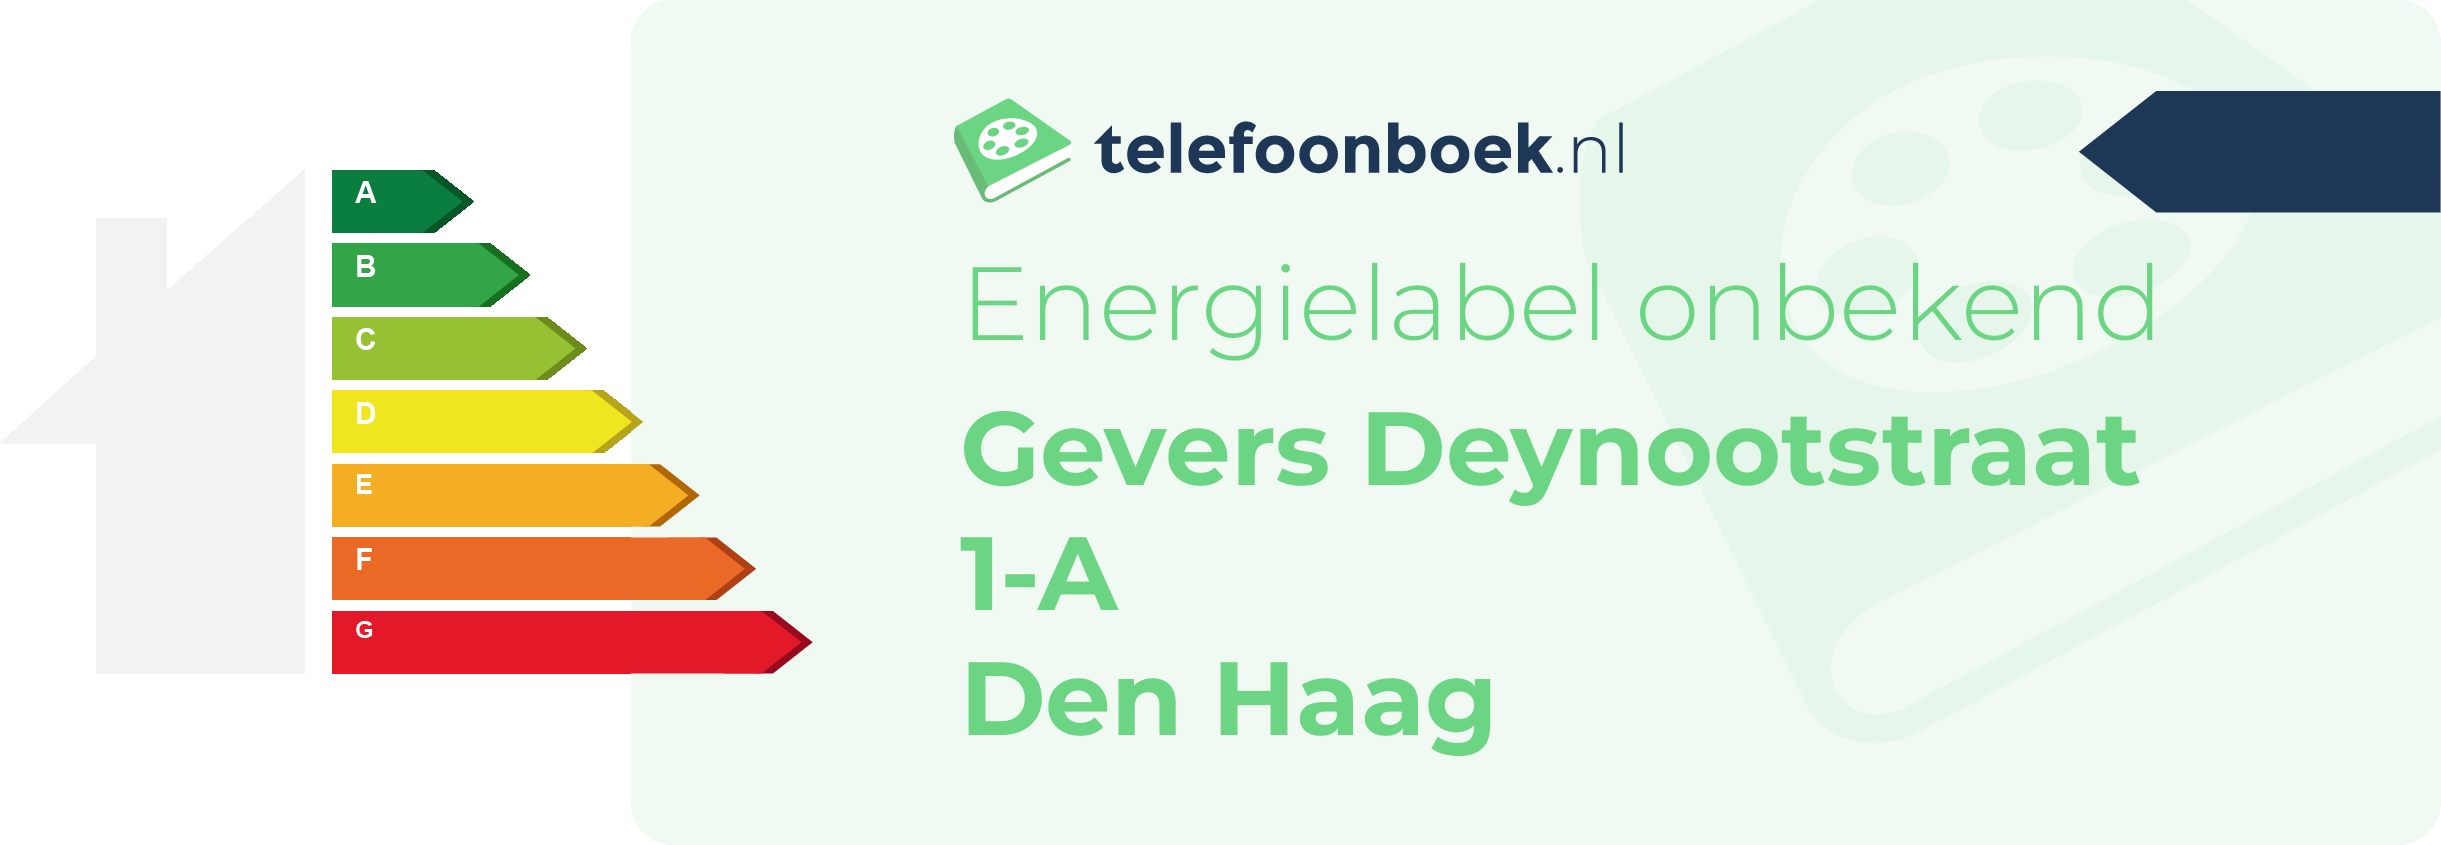 Energielabel Gevers Deynootstraat 1-A Den Haag